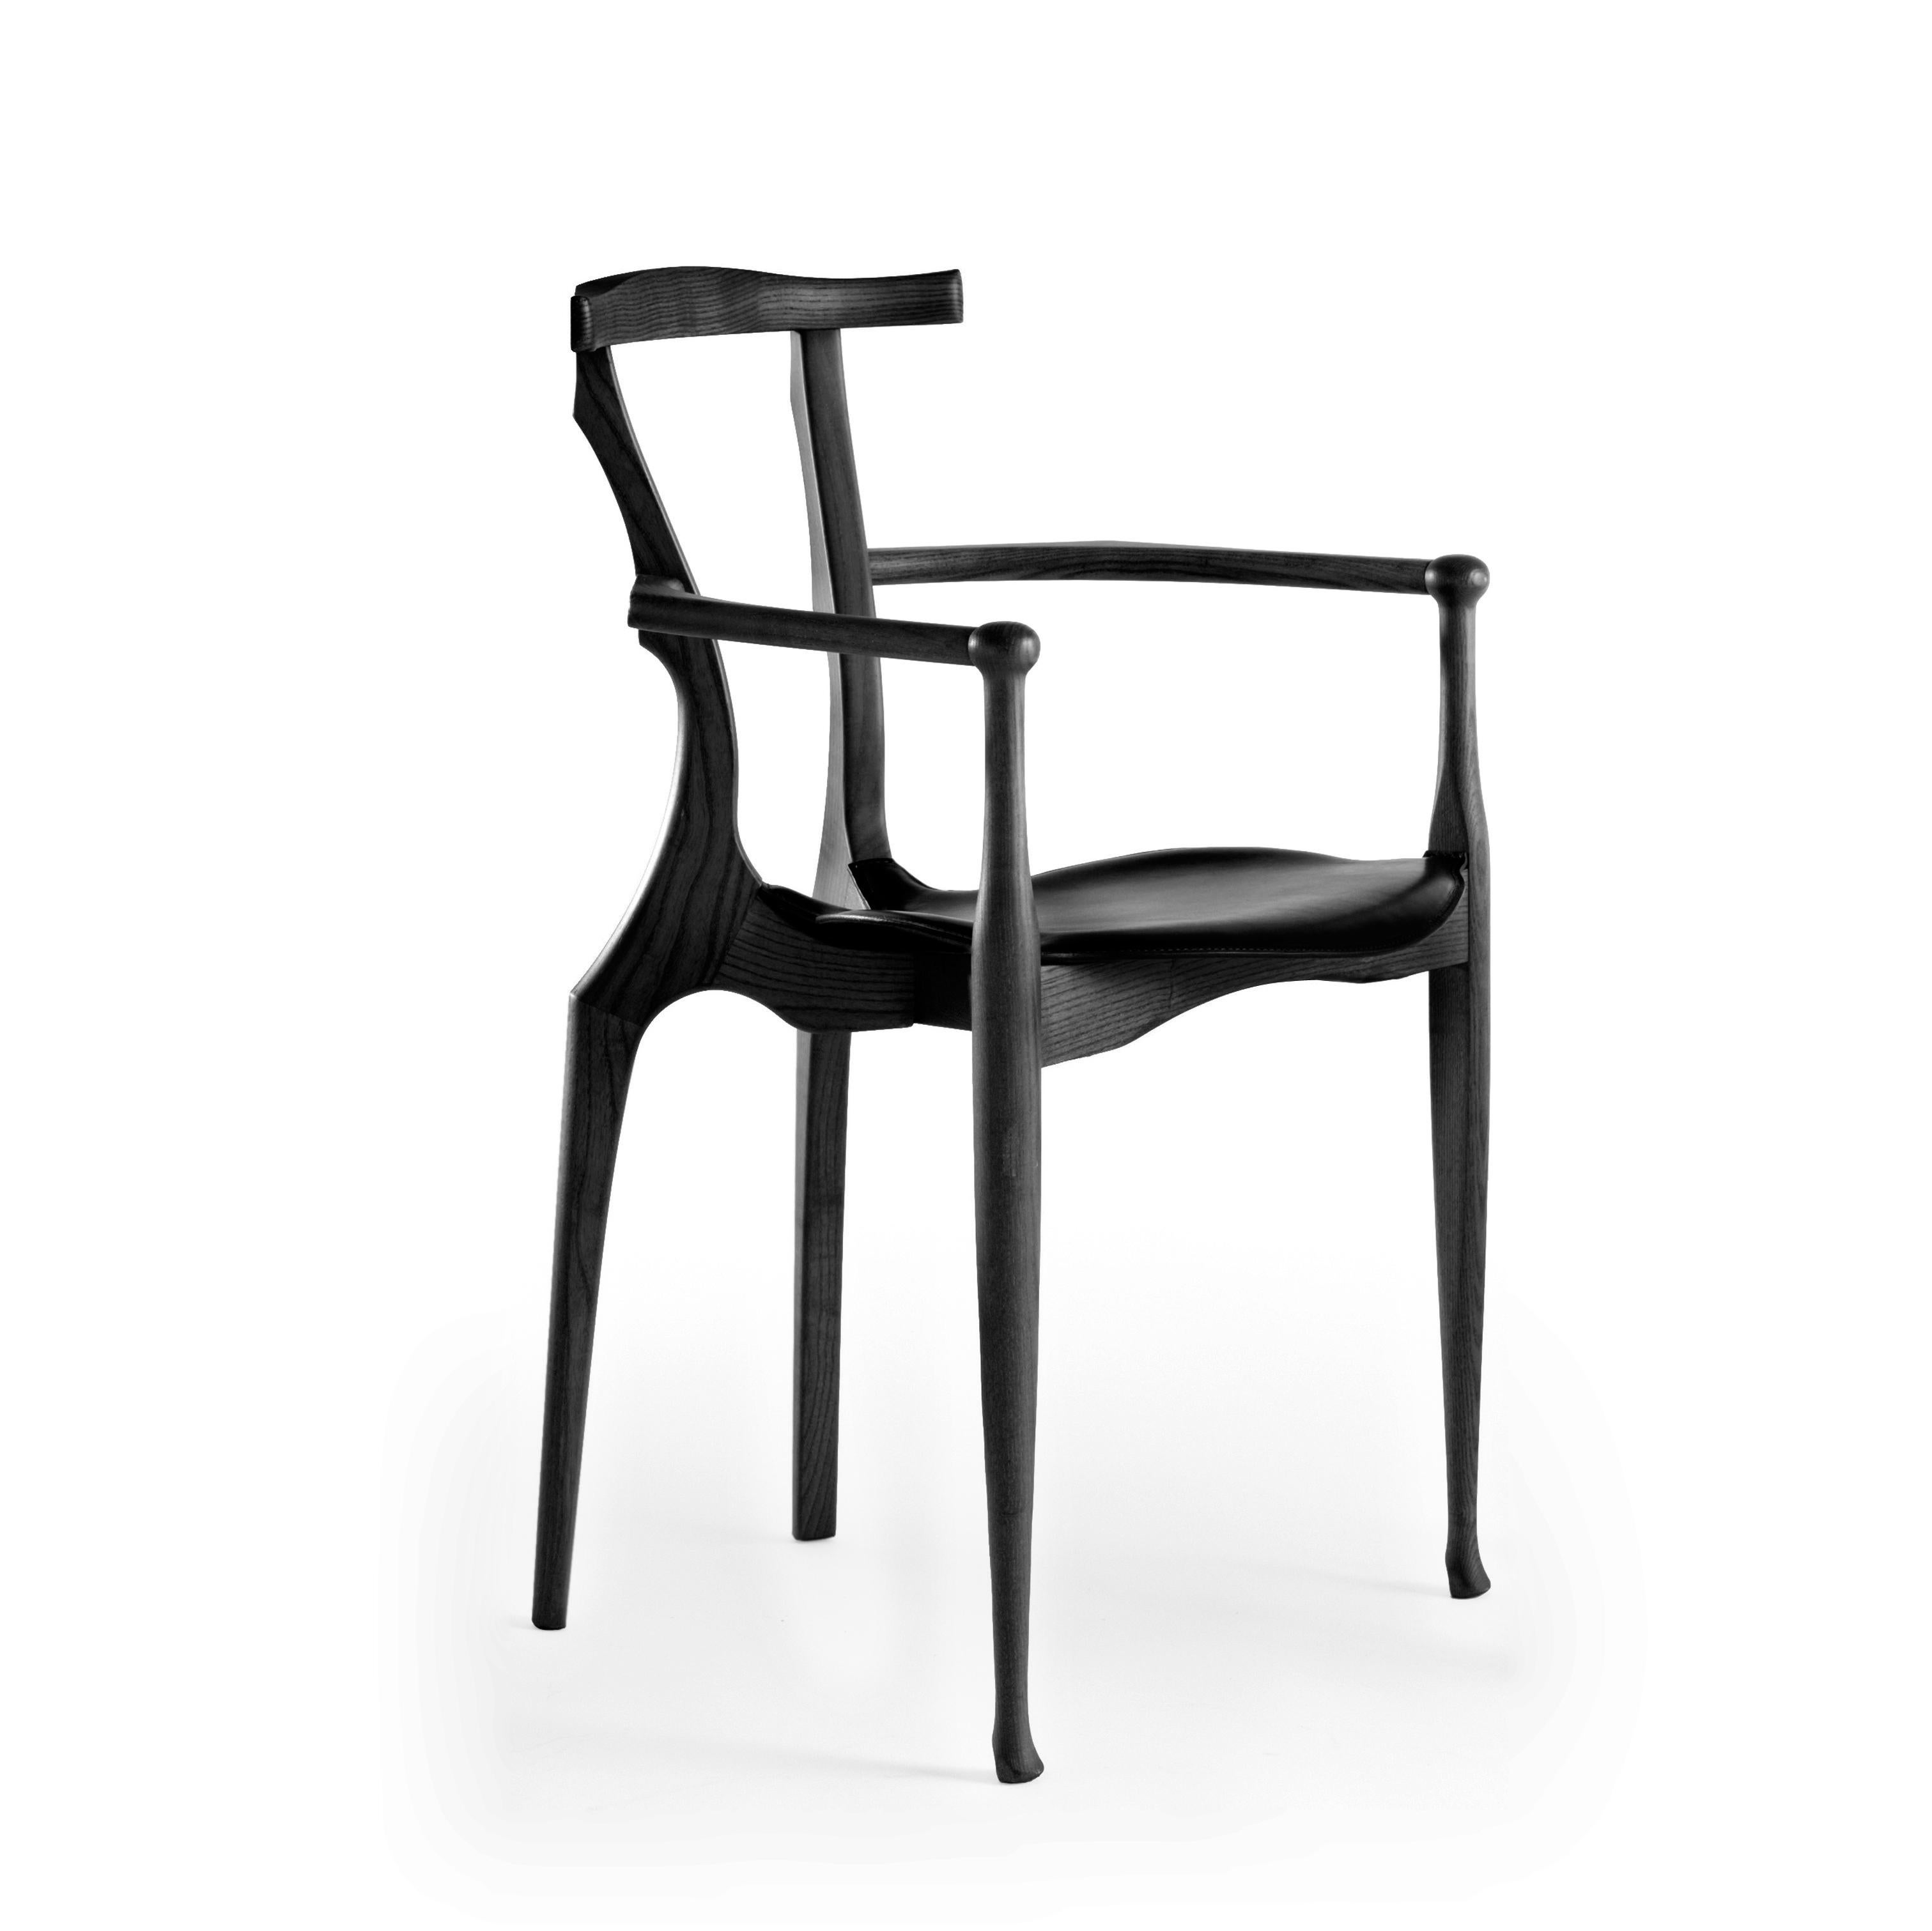 Ensemble de huit chaises Gaulino conçues par Oscar Tusquets et fabriquées par BD Barcelona Design, vers 2010.

La chaise Gaulino qui, conçue en 1987, a été sélectionnée pour le prix de design industriel et Adi-Fad en 1989 et à Iberdiseño en